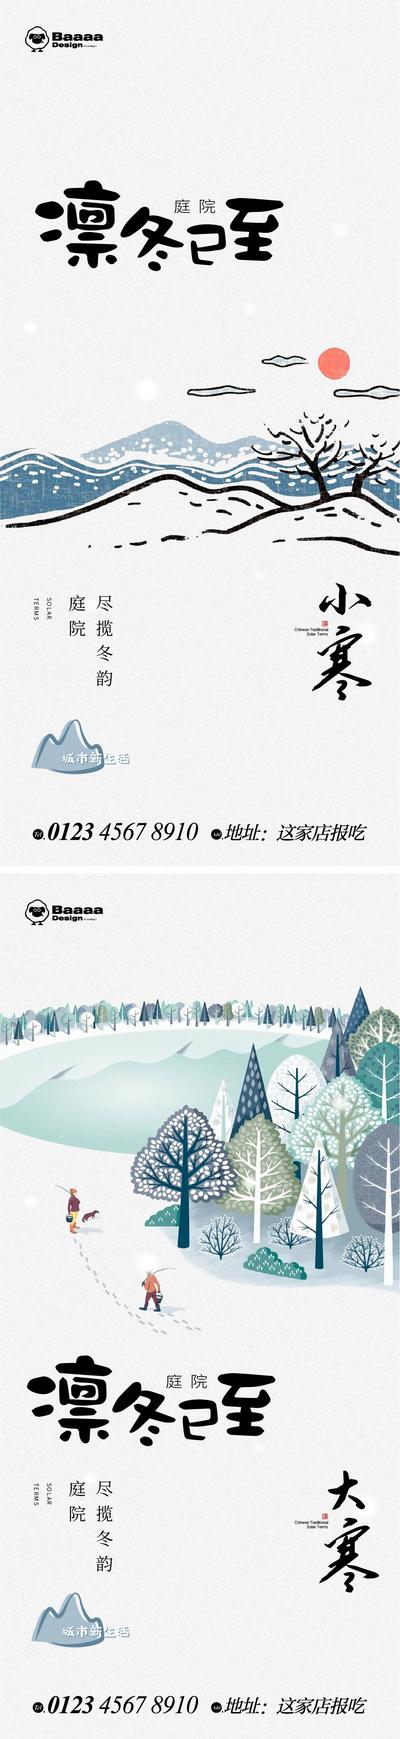 南门网 插画 节气 小寒 大寒 冬天 传统节日 卡通 涂鸦 毛笔 雪景 微信